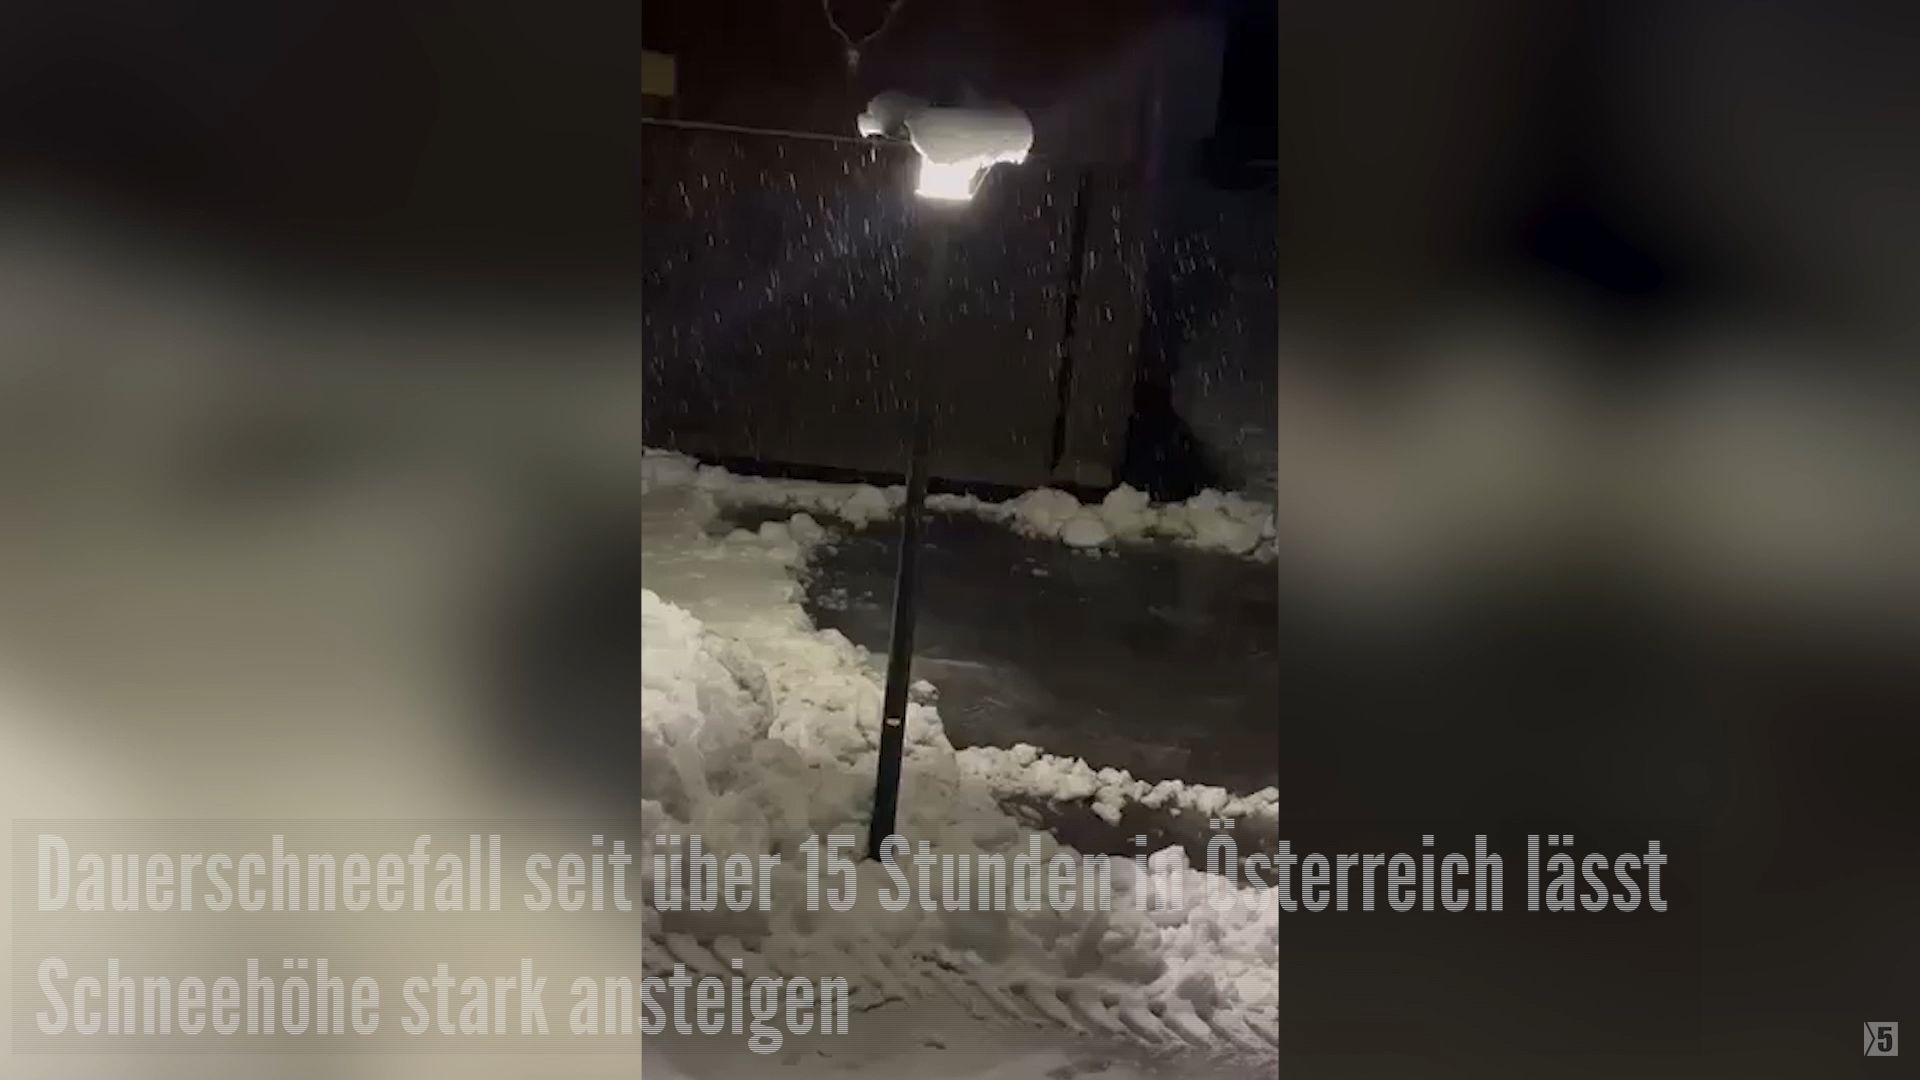 Dauerschneefall seit über 15 Stunden in Österreich lässt Schneehöhe stark ansteigen